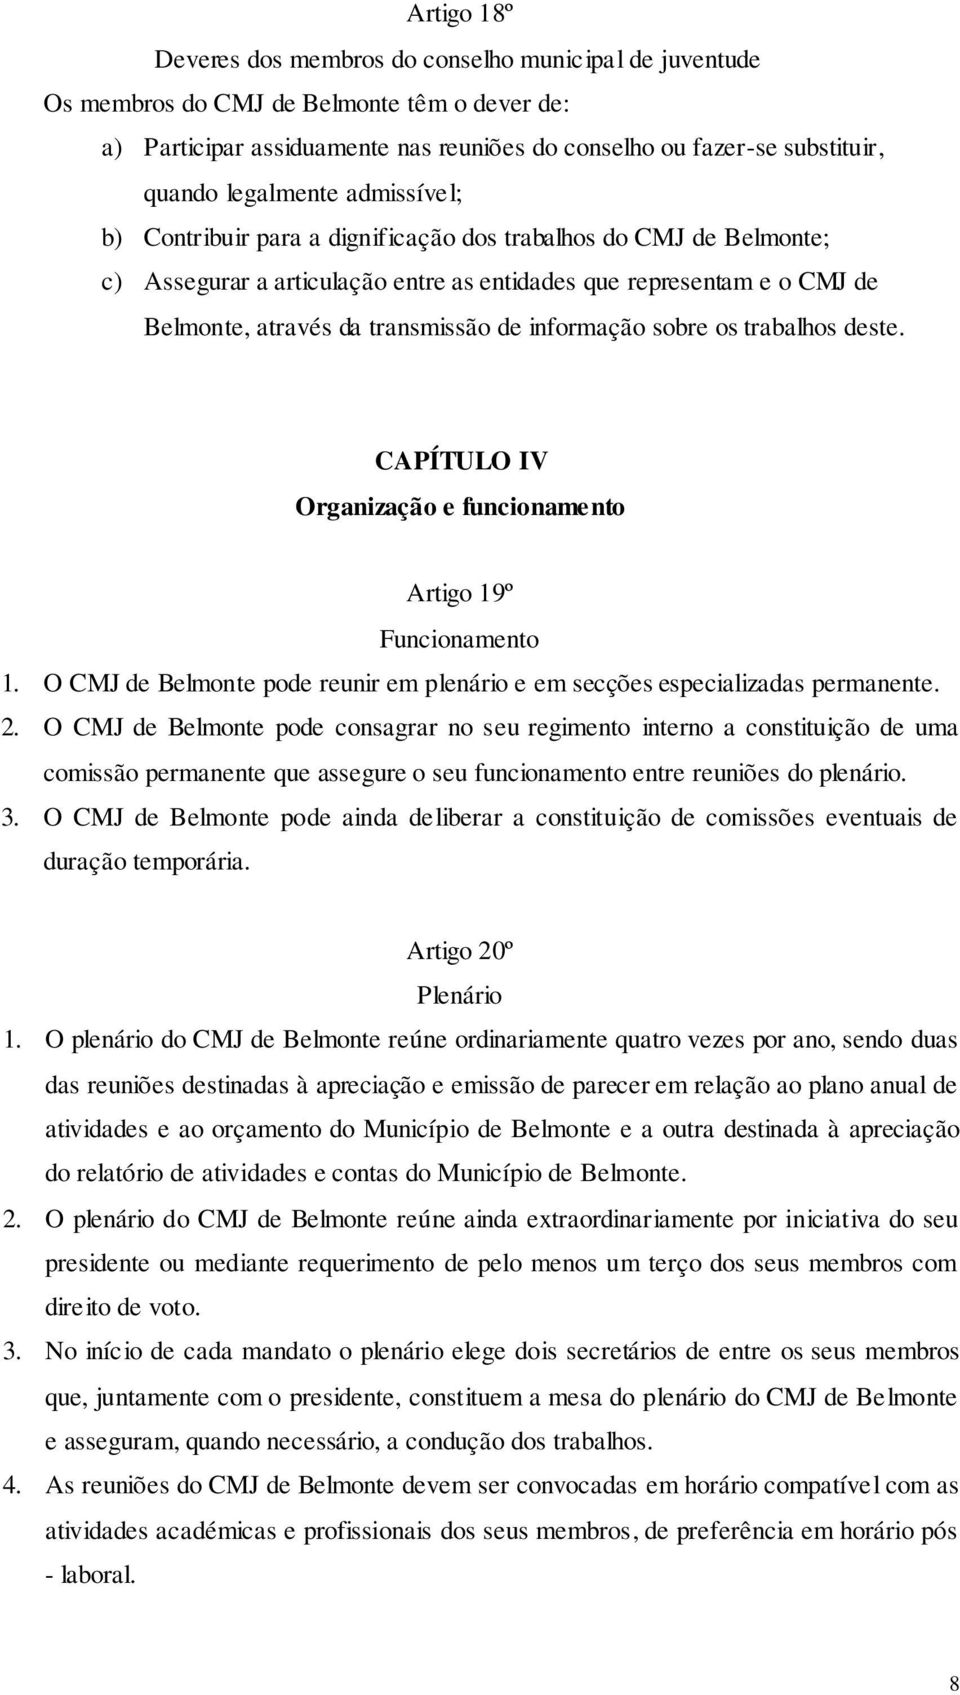 informação sobre os trabalhos deste. CAPÍTULO IV Organização e funcionamento Artigo 19º Funcionamento 1. O CMJ de Belmonte pode reunir em plenário e em secções especializadas permanente. 2.